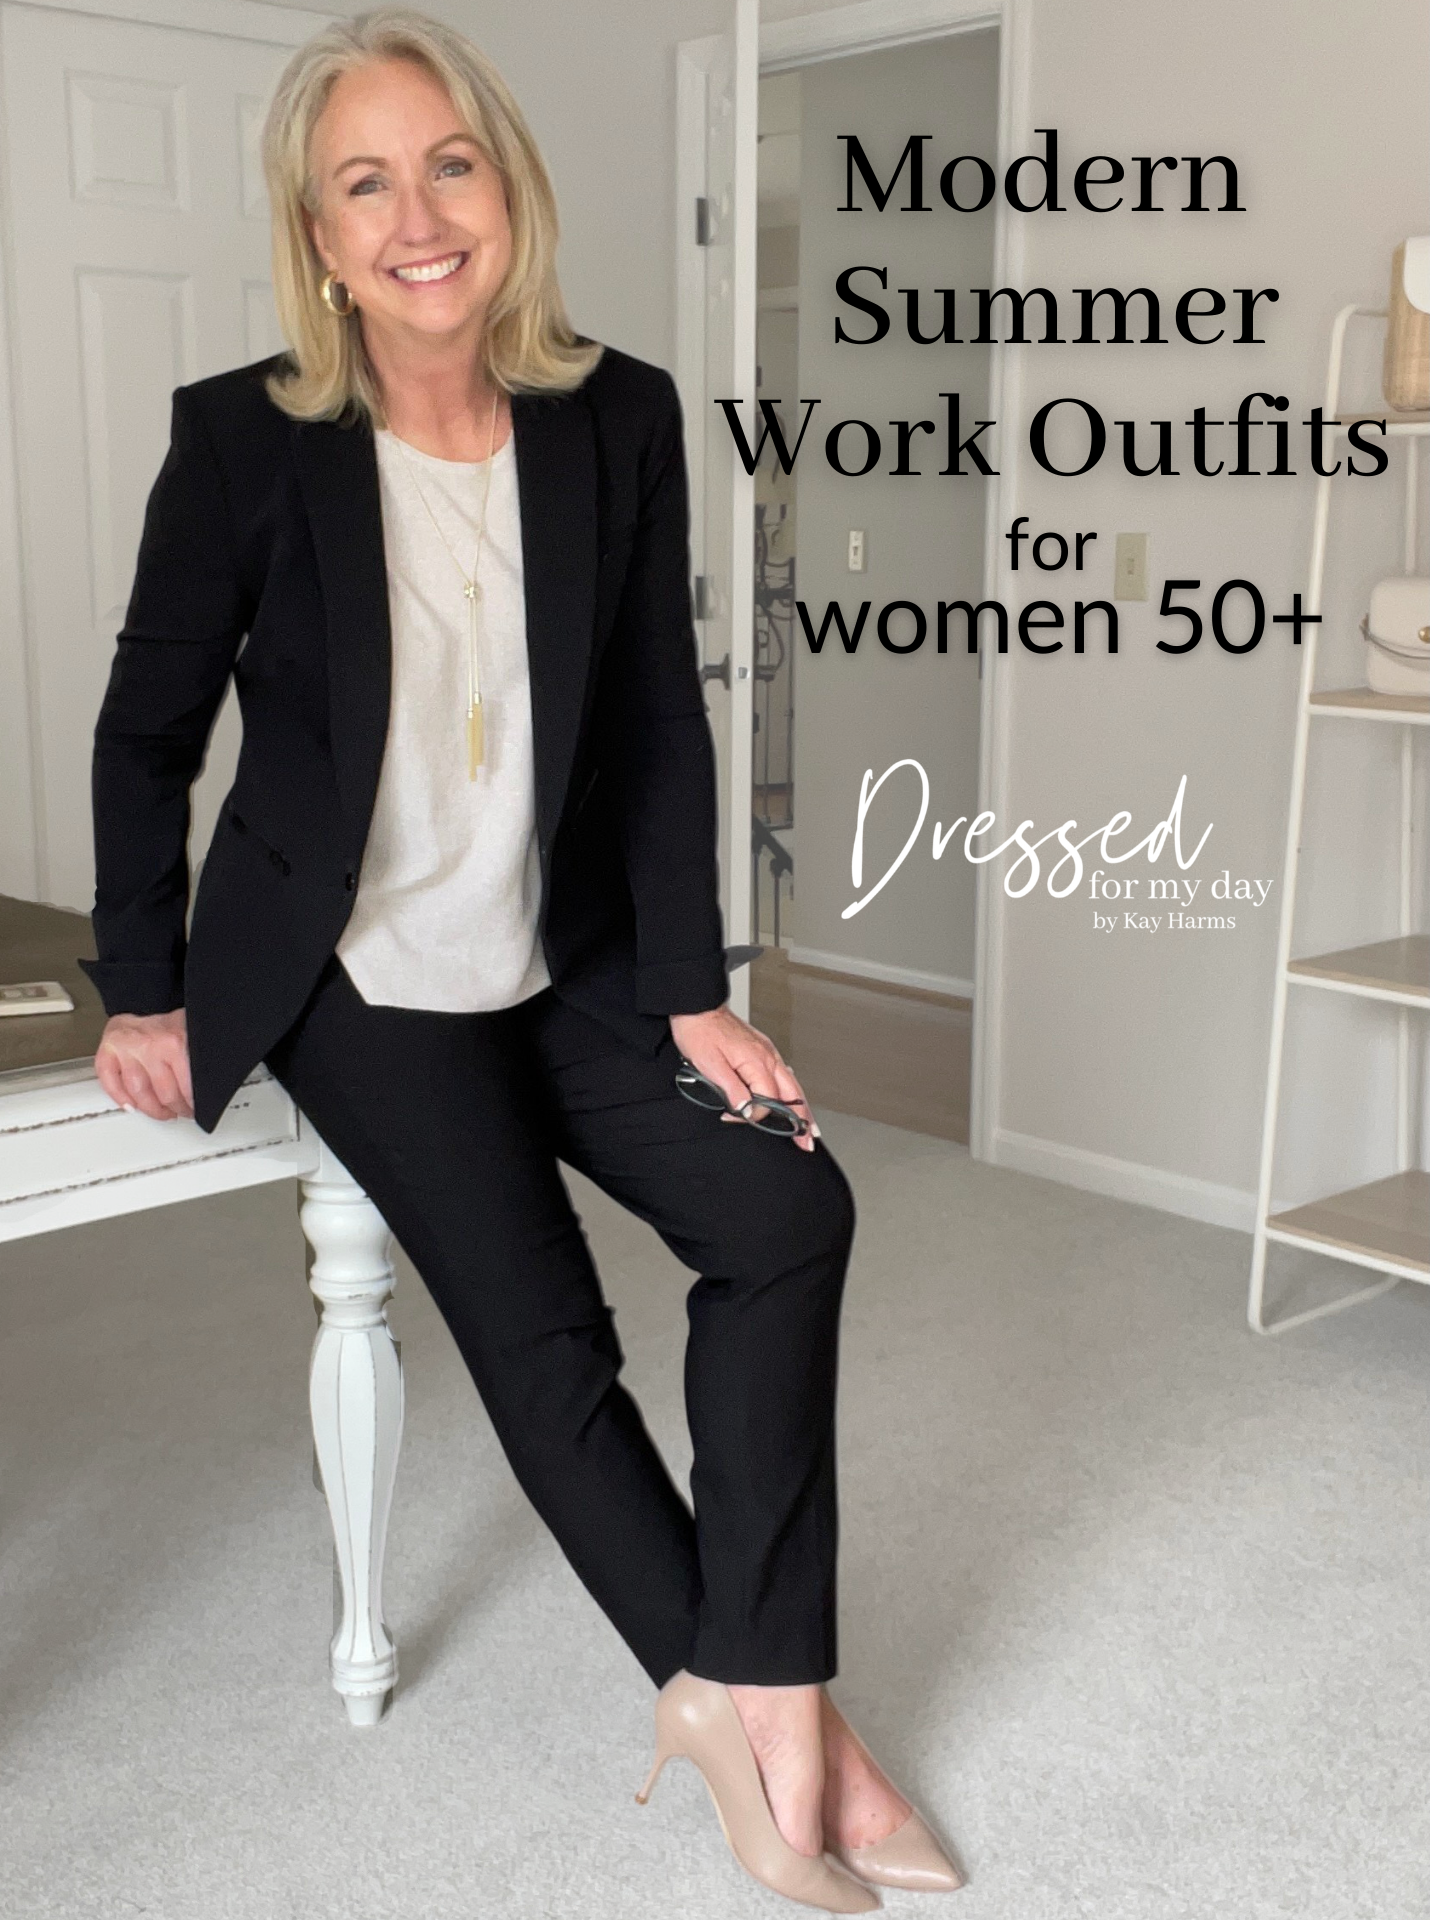 Modern Summer Work Outfits for Women 50+